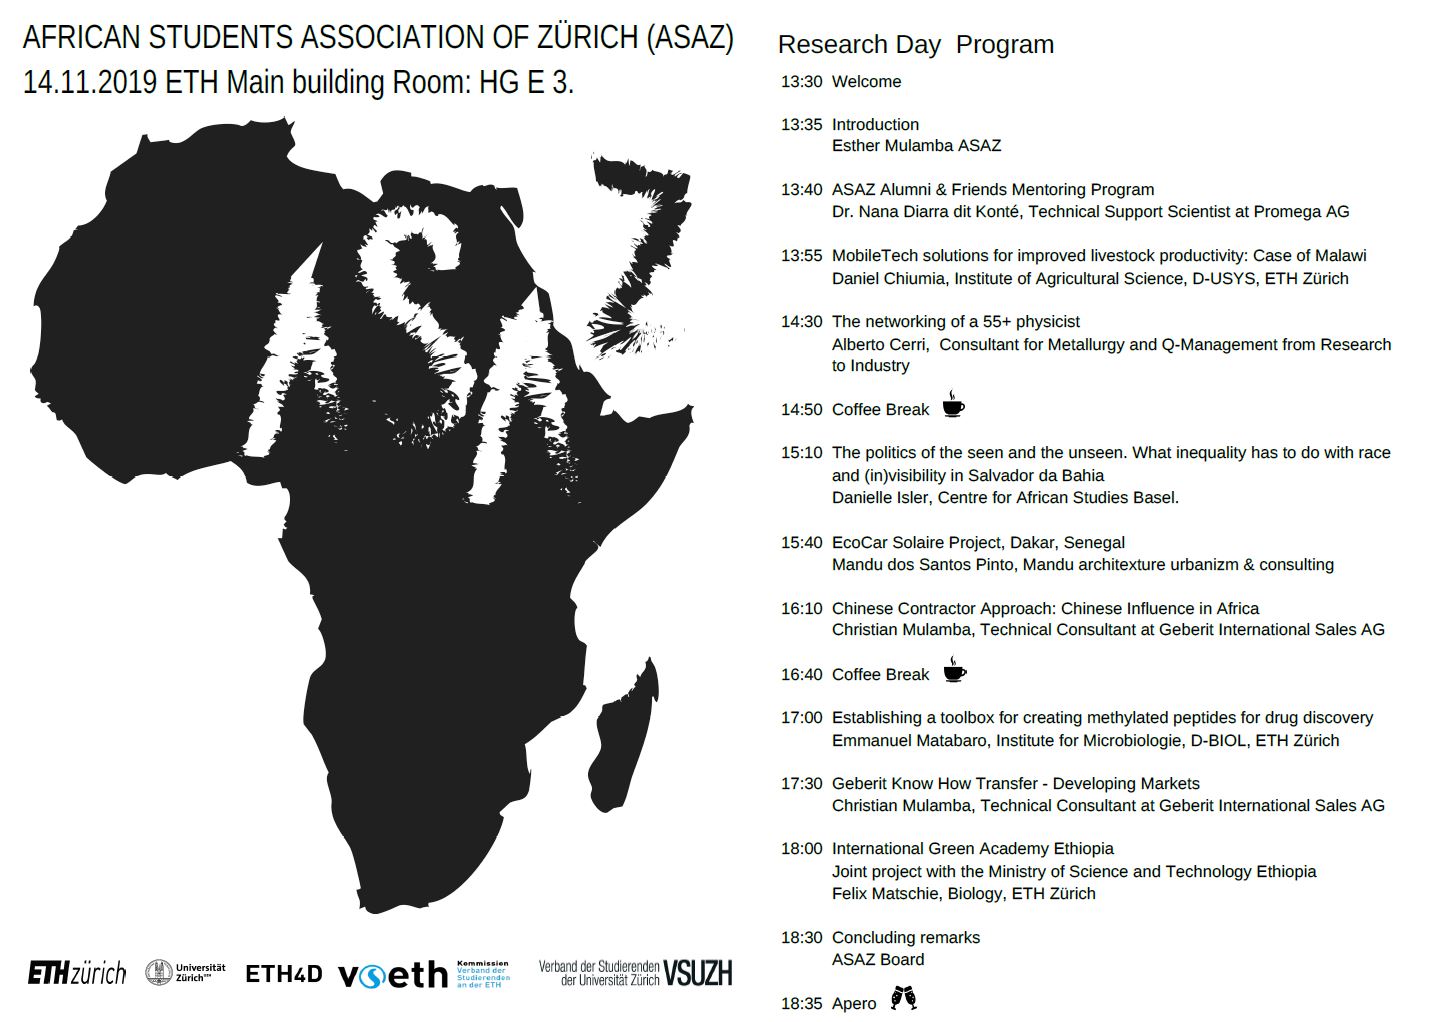 ASAZ Research Day Programme